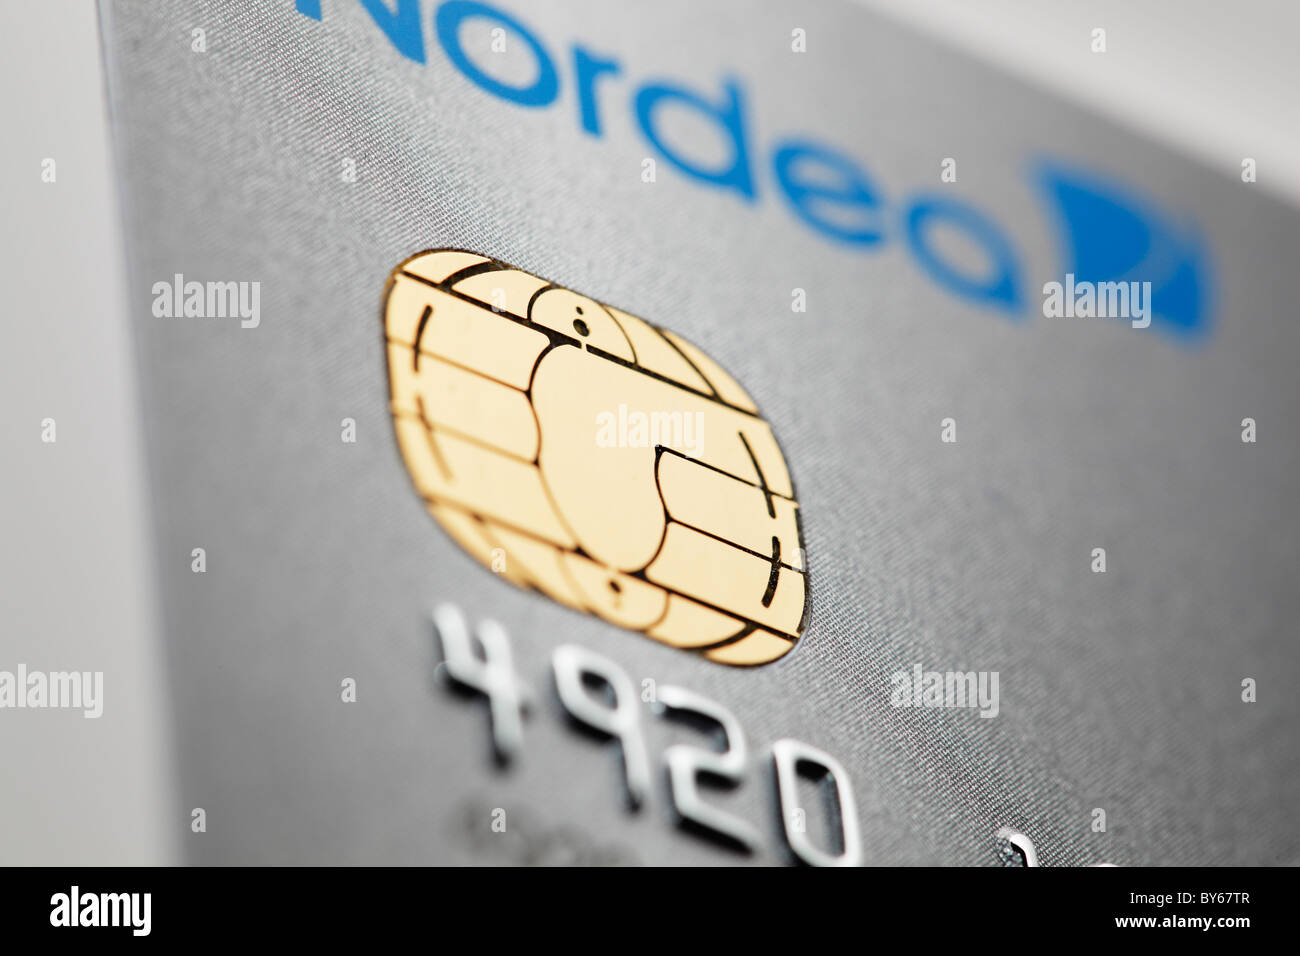 Detail einer icc-Chip Card Kreditkarte von Nordea Bank ausgestellt. Stockfoto